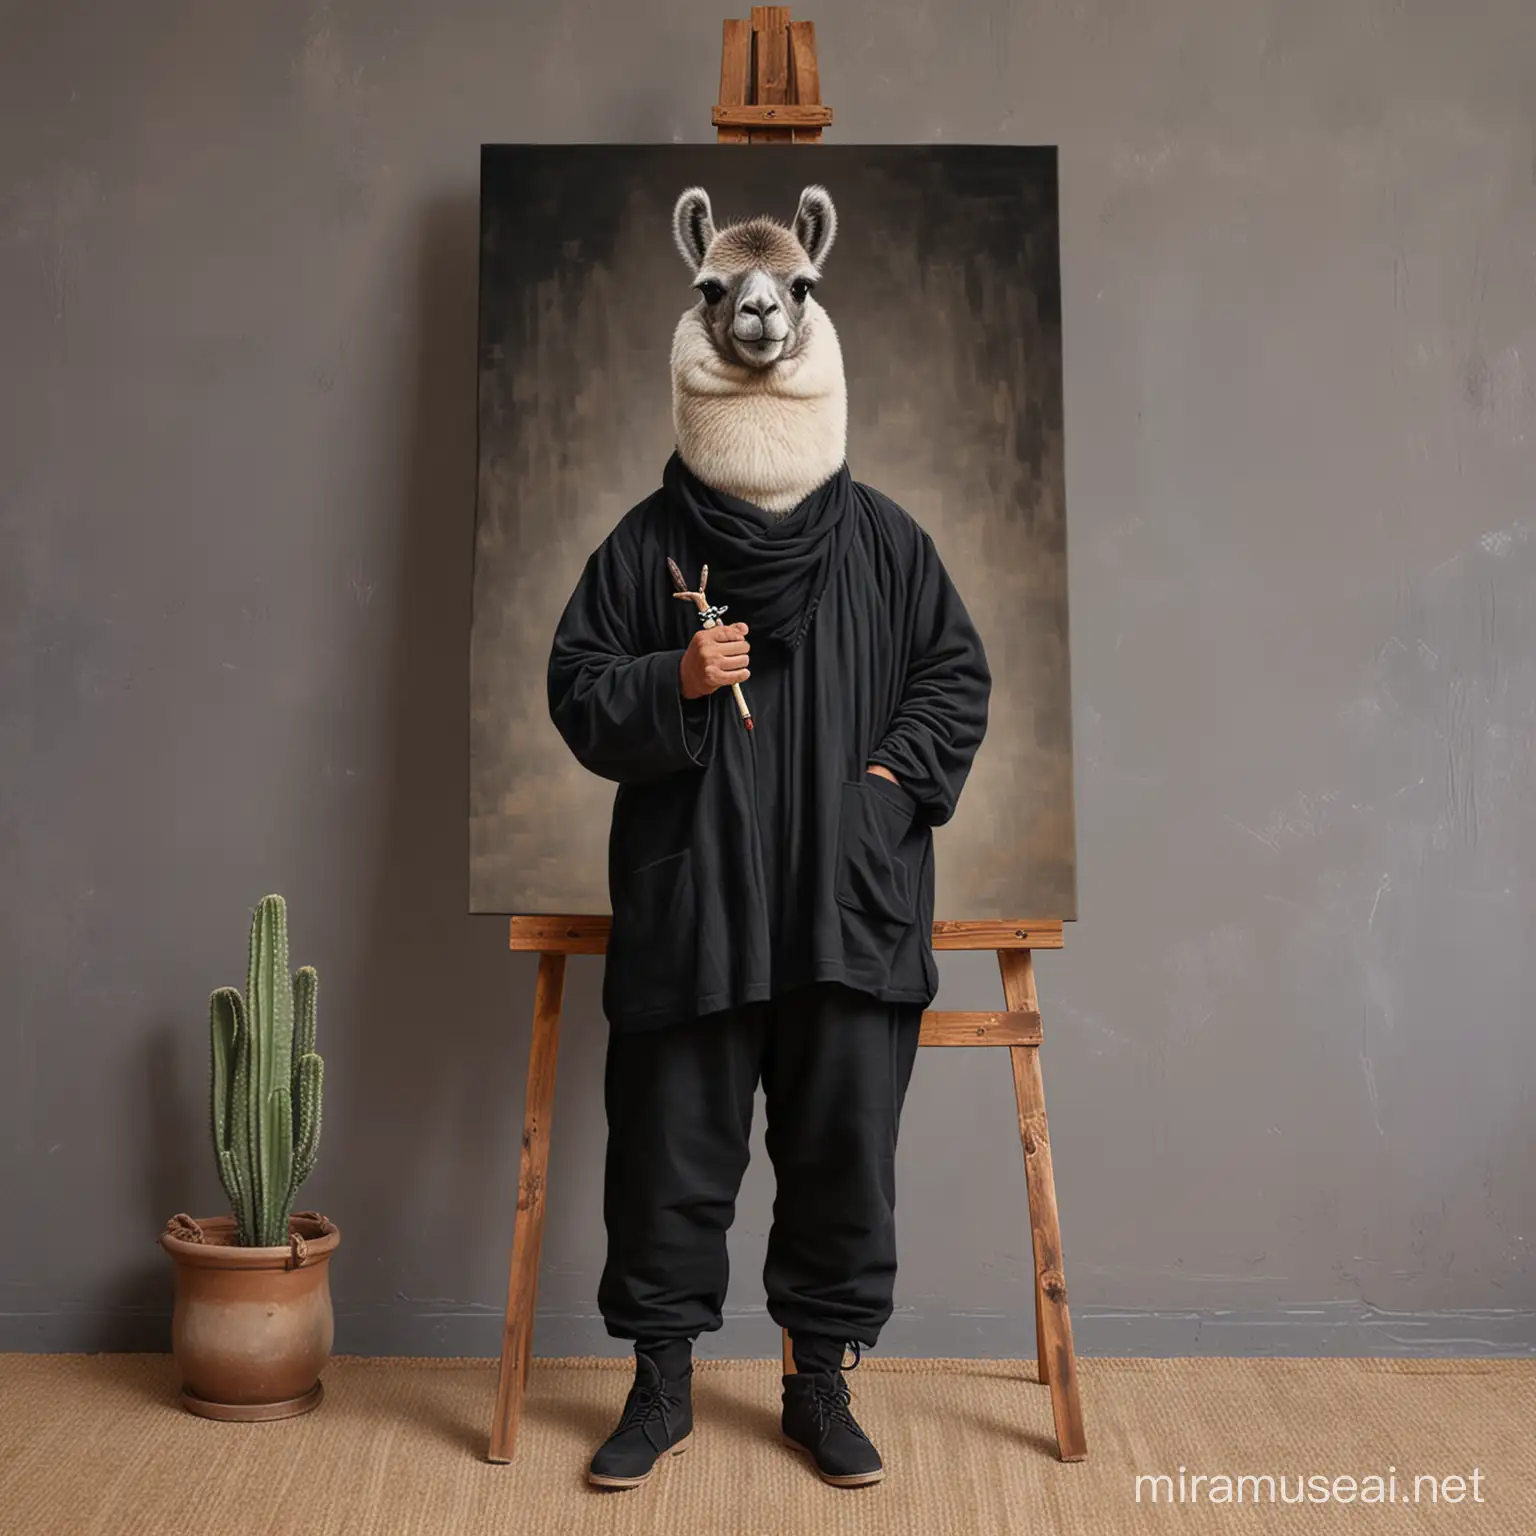 BlackClad Lama Creating Art on Canvas